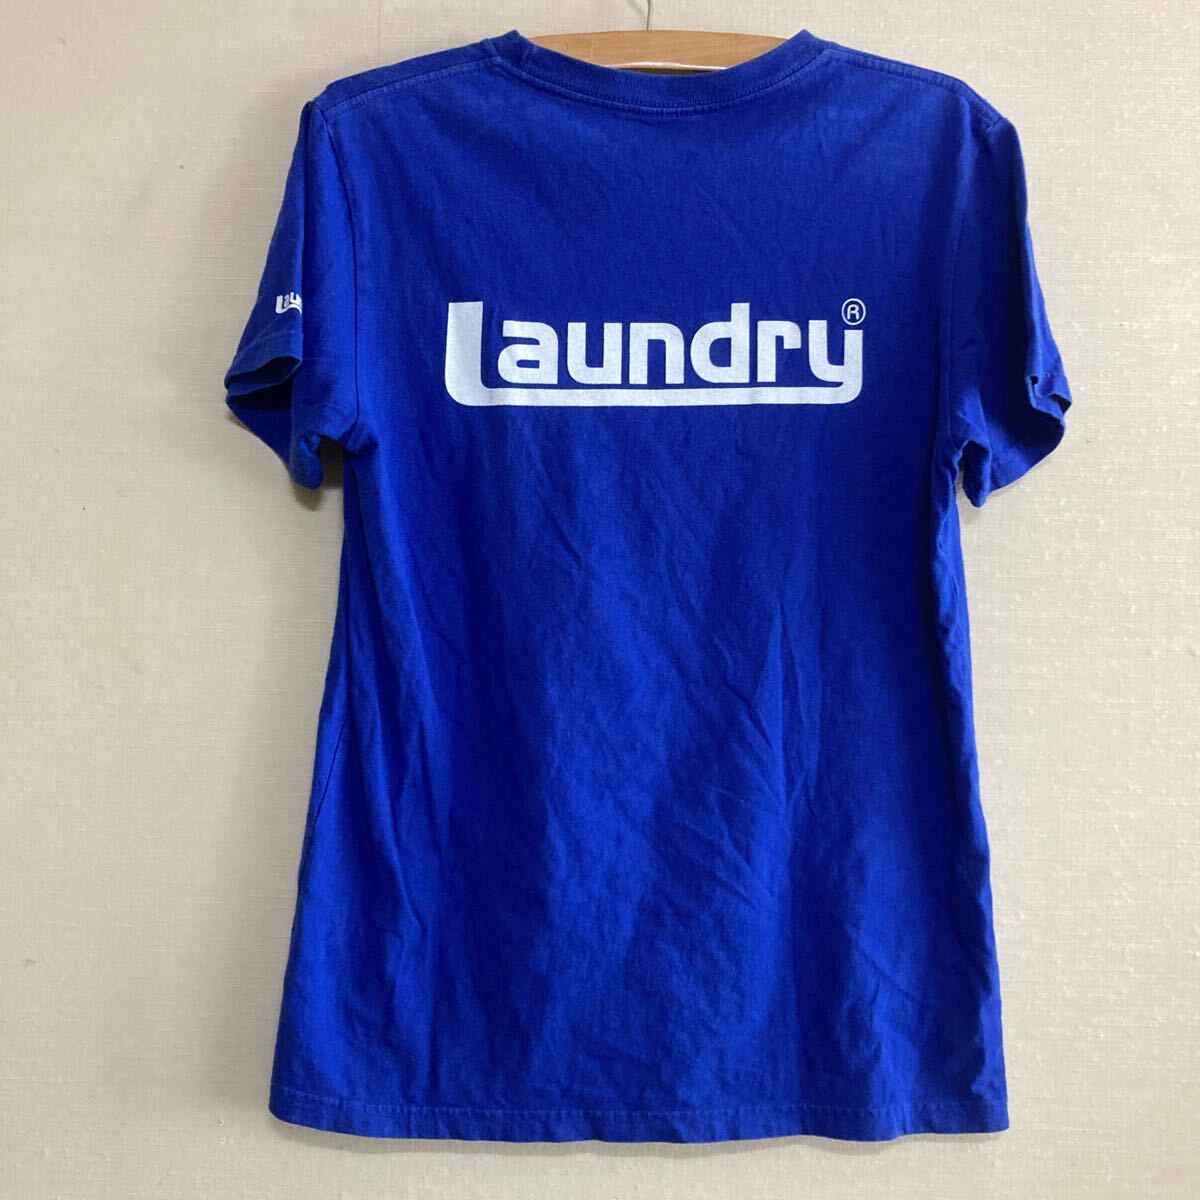 Laundry サッカー Tシャツ メンズ M ブルー 侍ジャパン Jリーグ ワールドカップ ランドリーの画像2